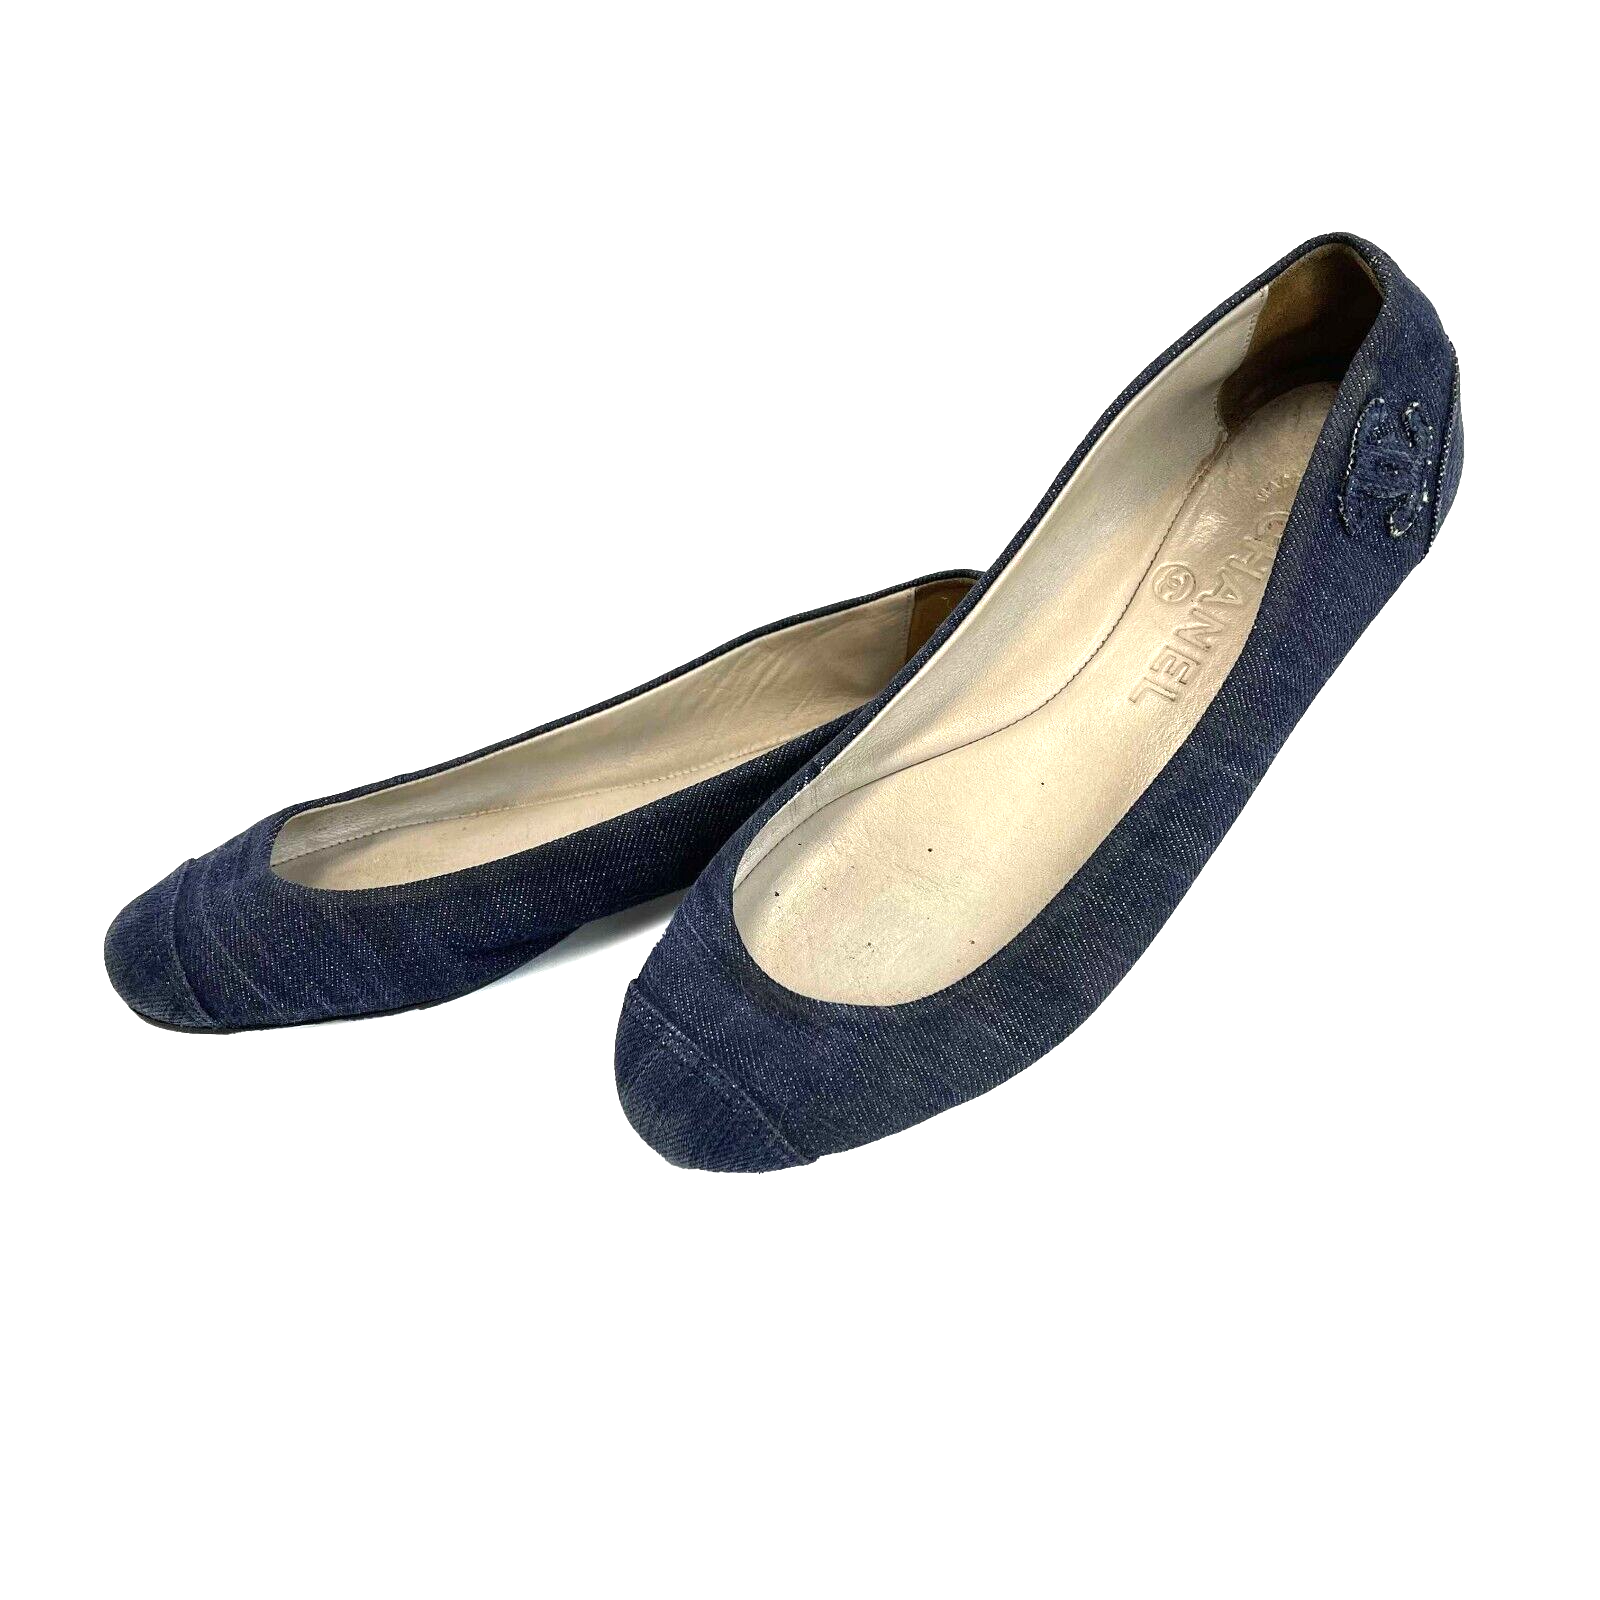 Chanel Denim Ballet Flats Blue 36.5 Shoes US 6.5